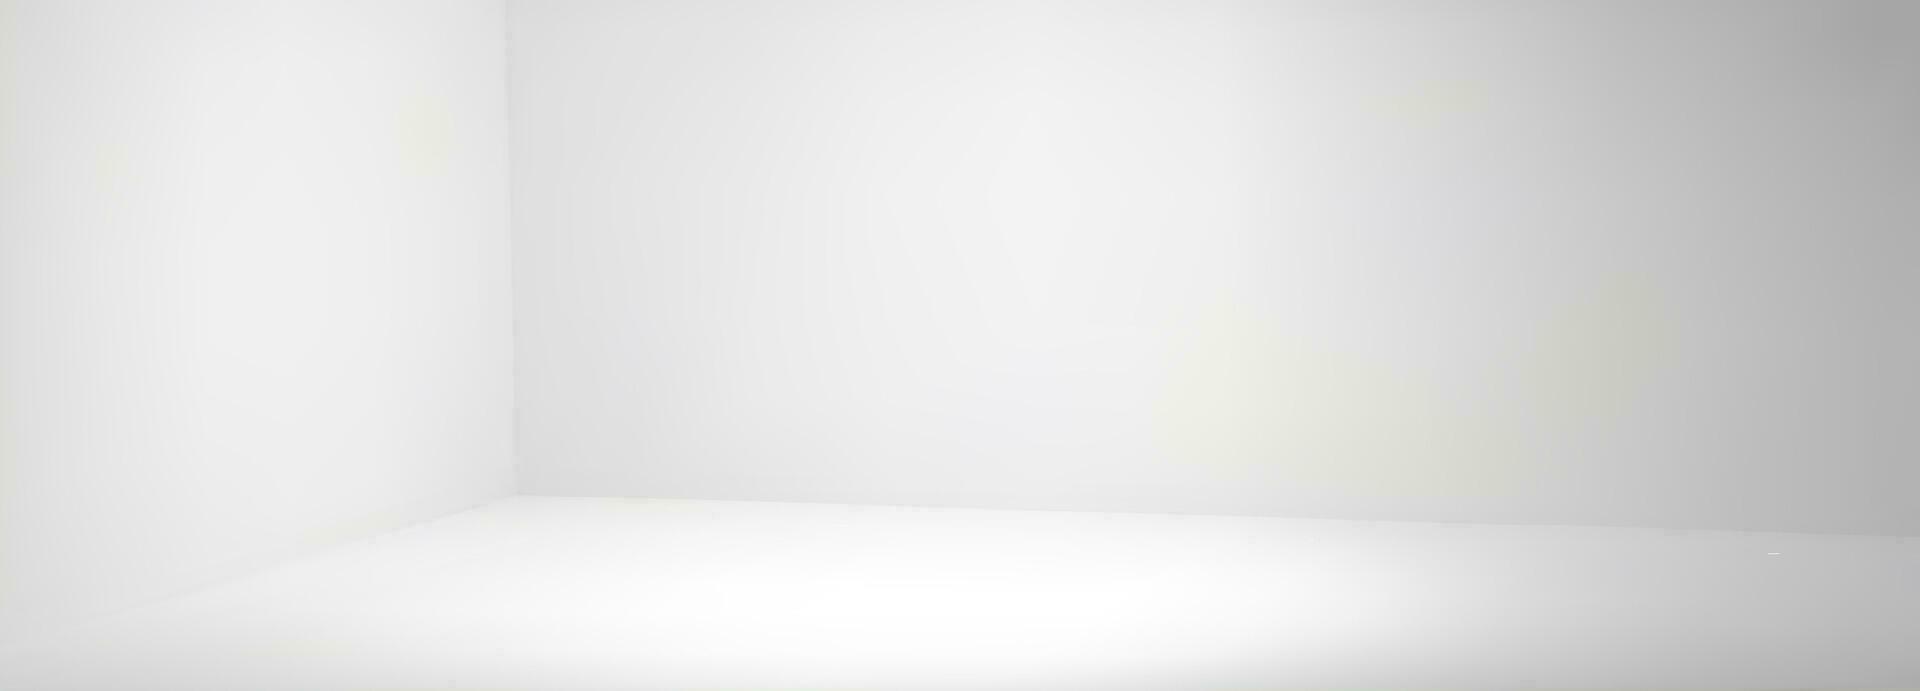 esvaziar branco canto quarto com parede dentro estúdio 3d vetor fundo. limpar \ limpo interior perspectiva Visão corredor brincar para apresentação ou exibição ilustração. realista foto tiro área com luz